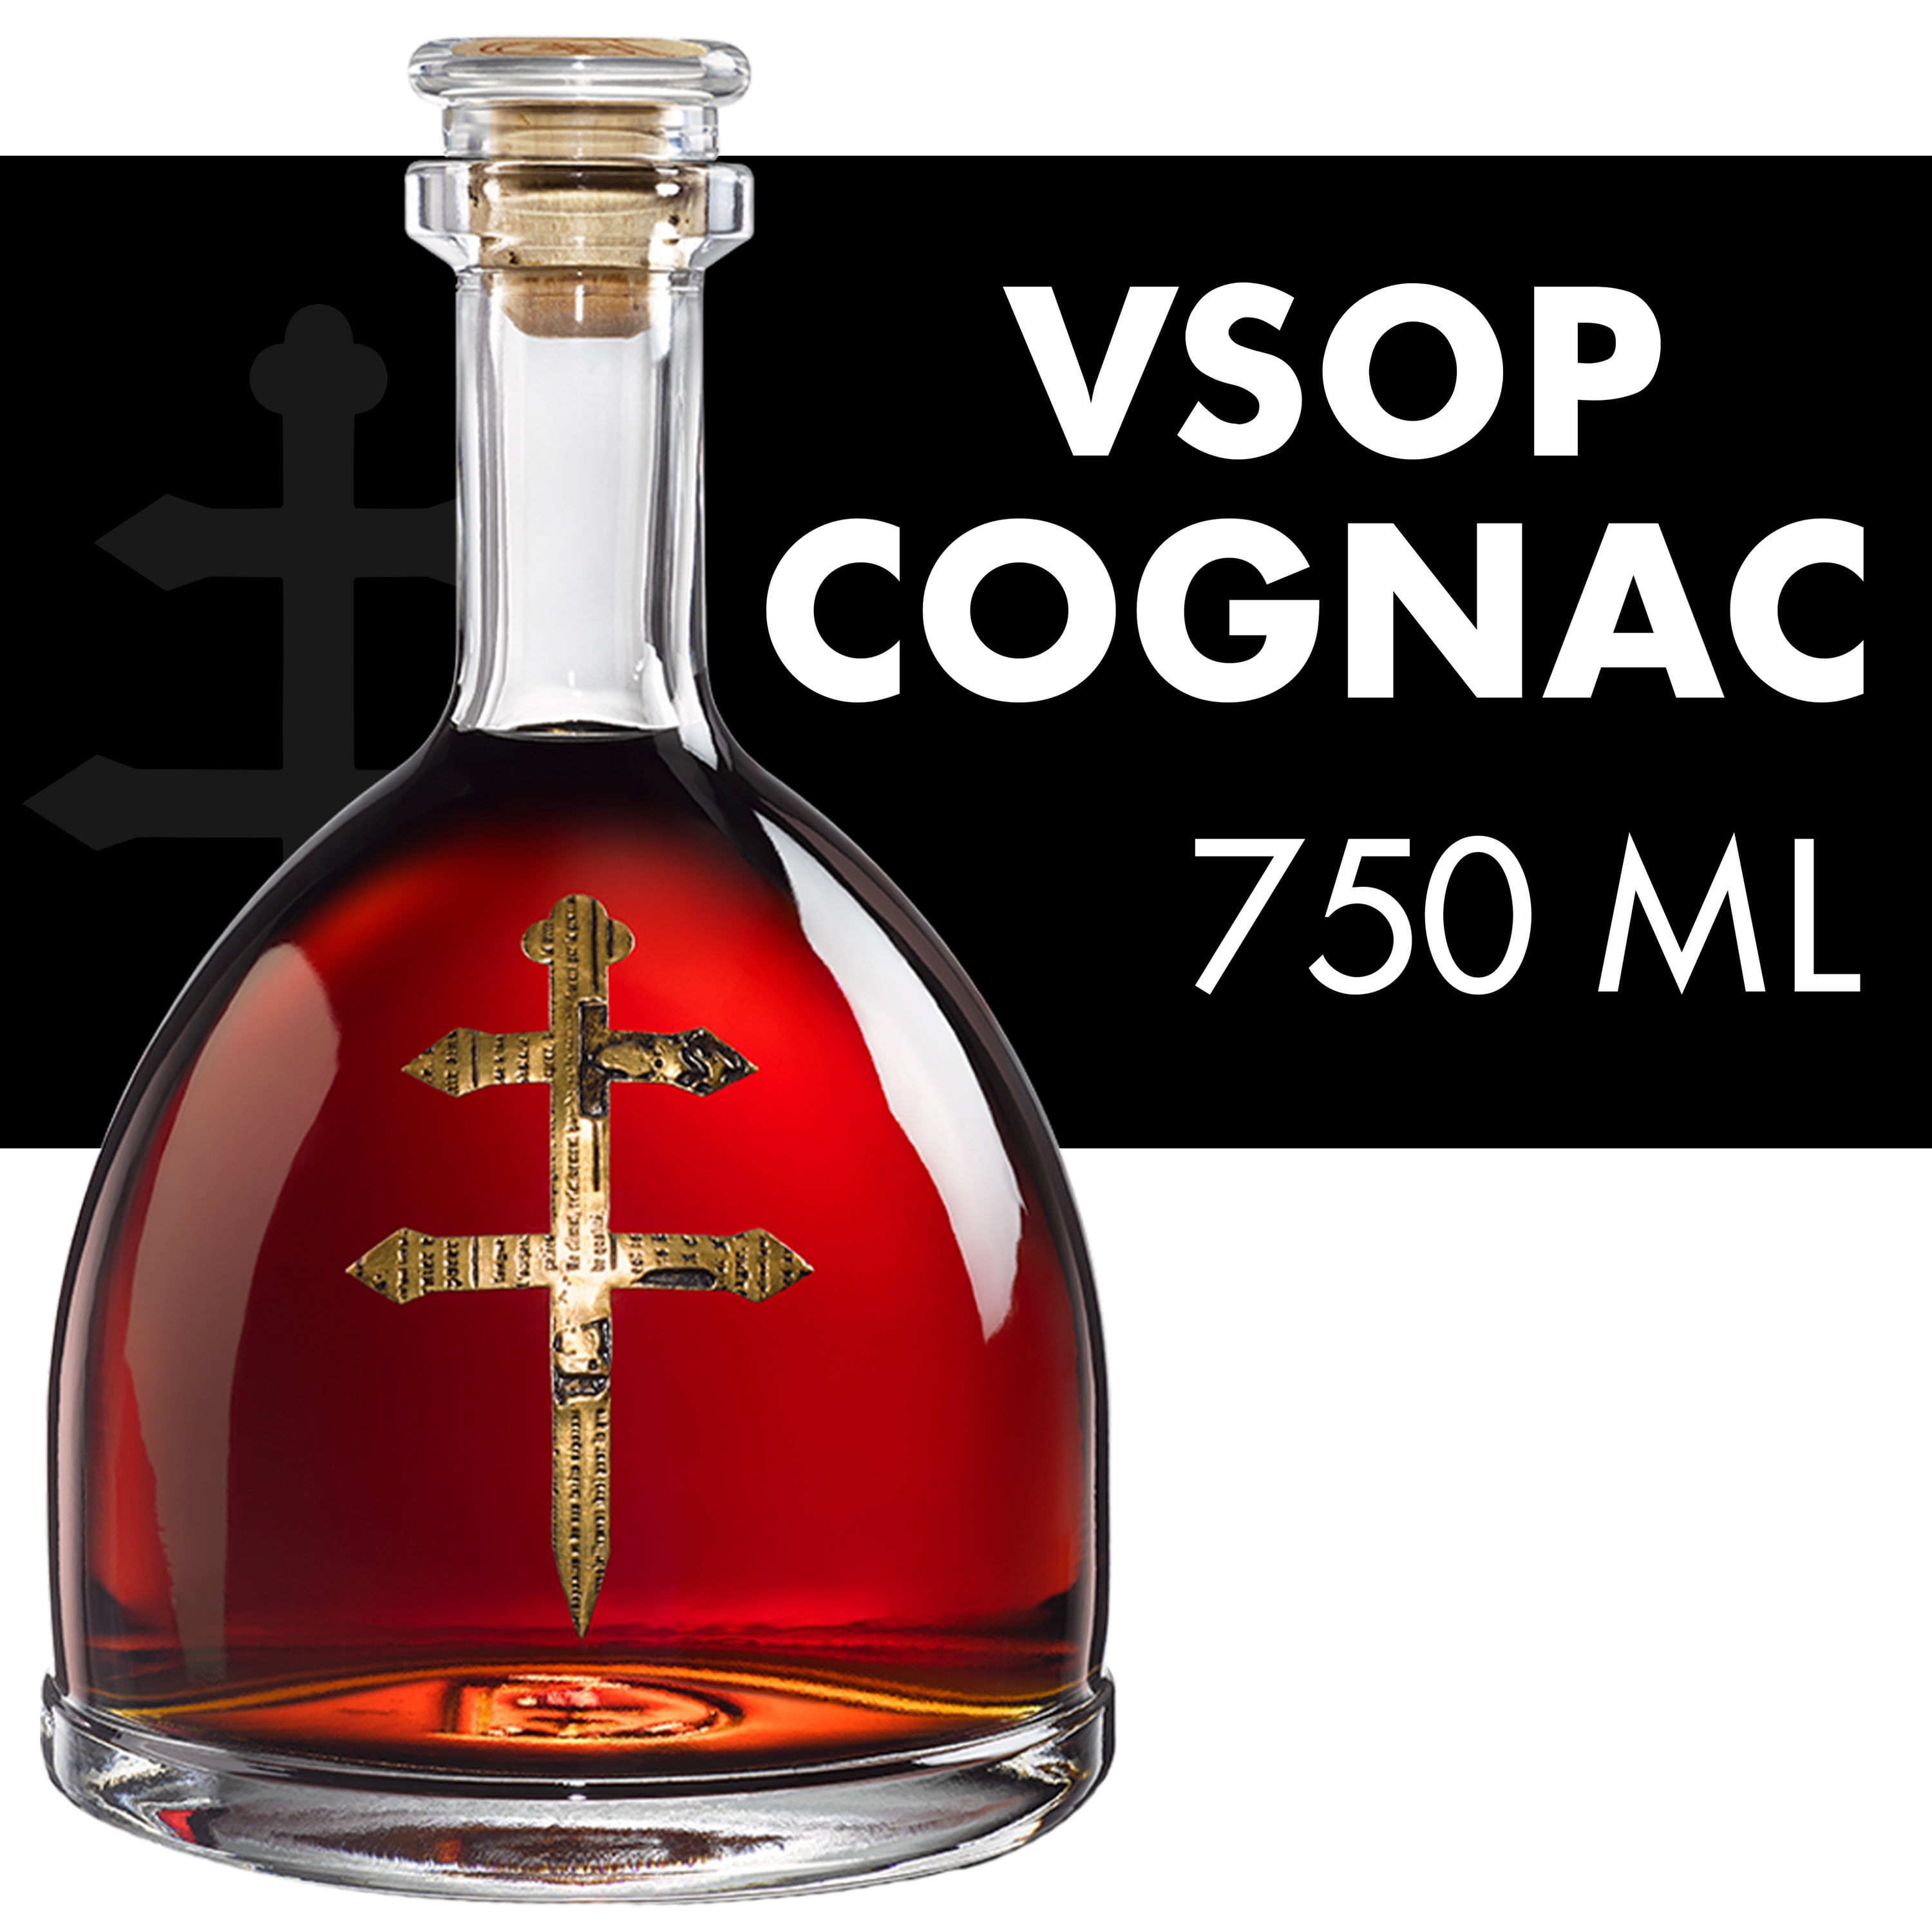 D’USSE VSOP Cognac, 750 mL Bottle, ABV 40% - Walmart.com